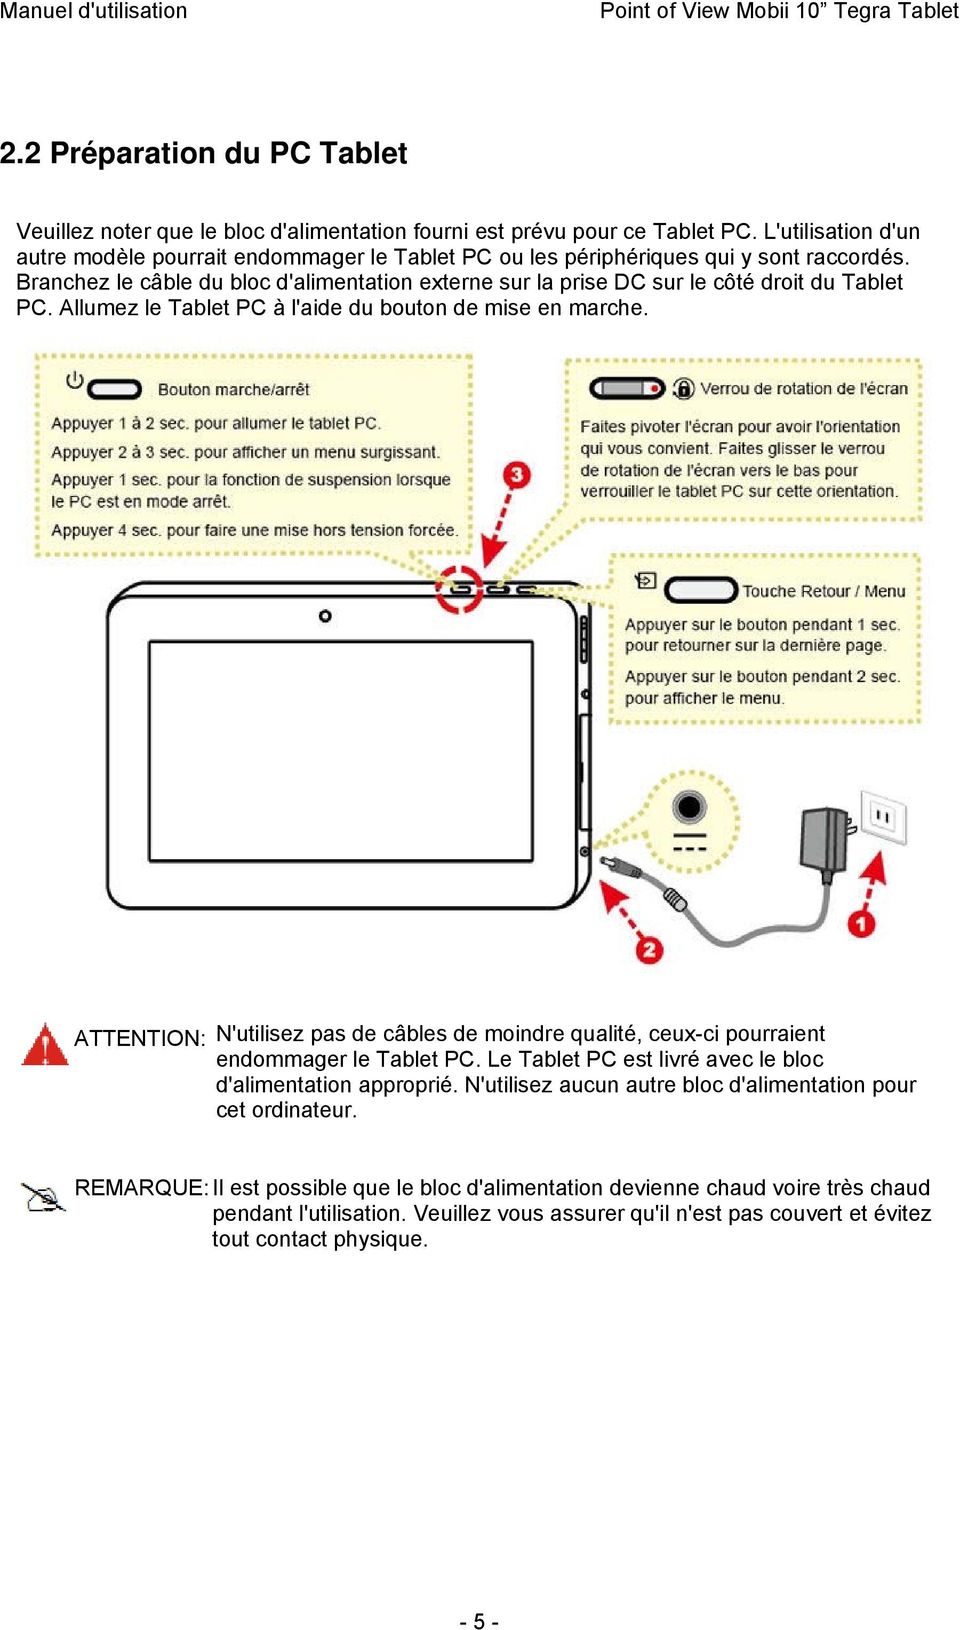 Branchez le câble du bloc d'alimentation externe sur la prise DC sur le côté droit du Tablet PC. Allumez le Tablet PC à l'aide du bouton de mise en marche.